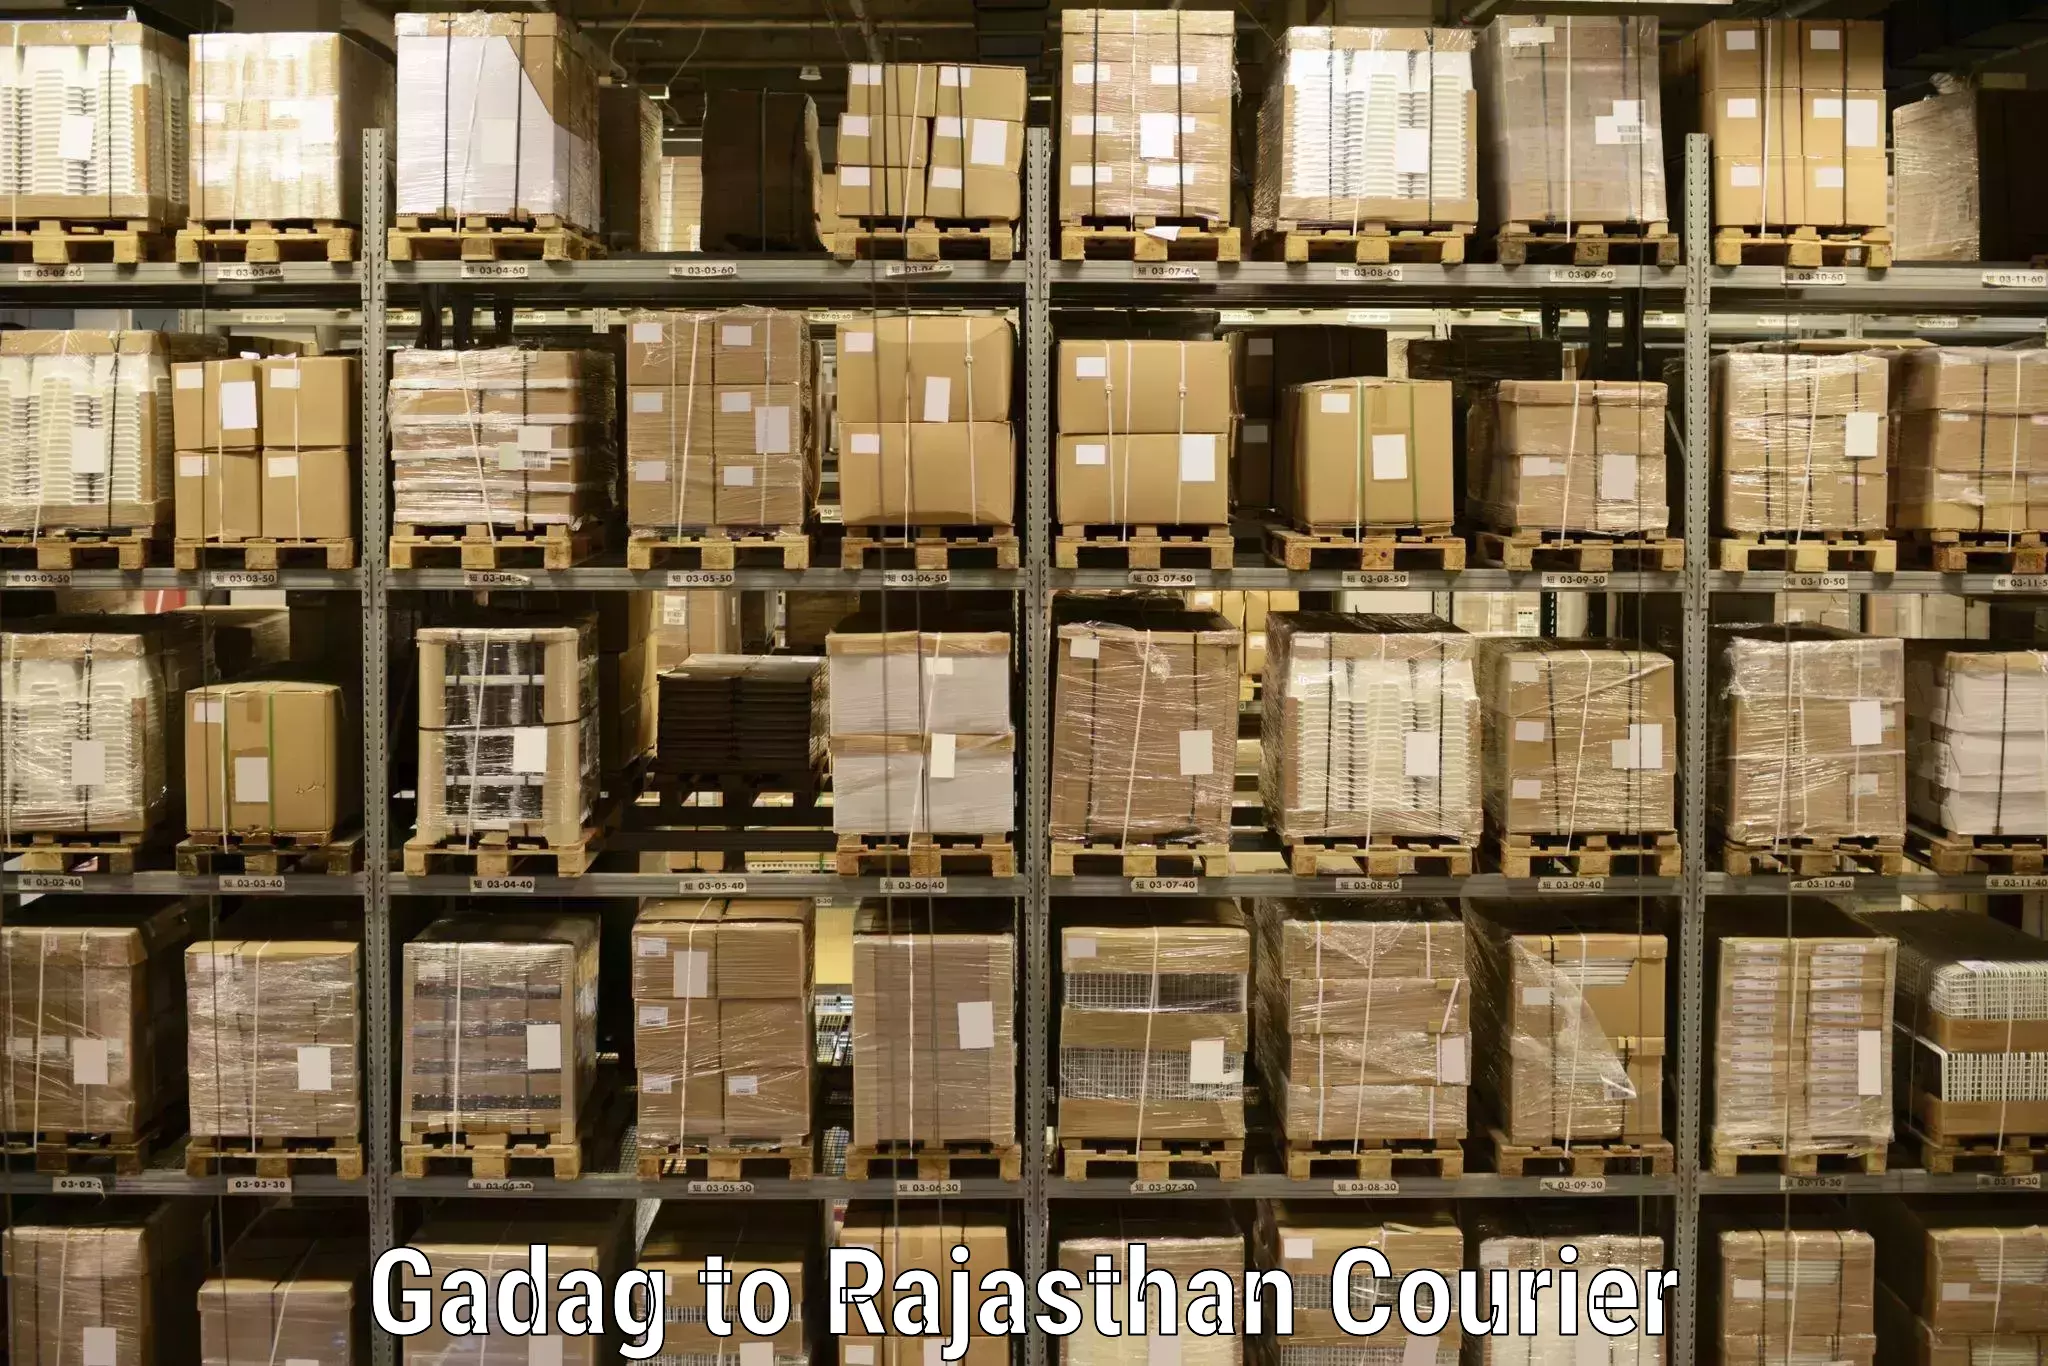 Cargo delivery service Gadag to Tarnau